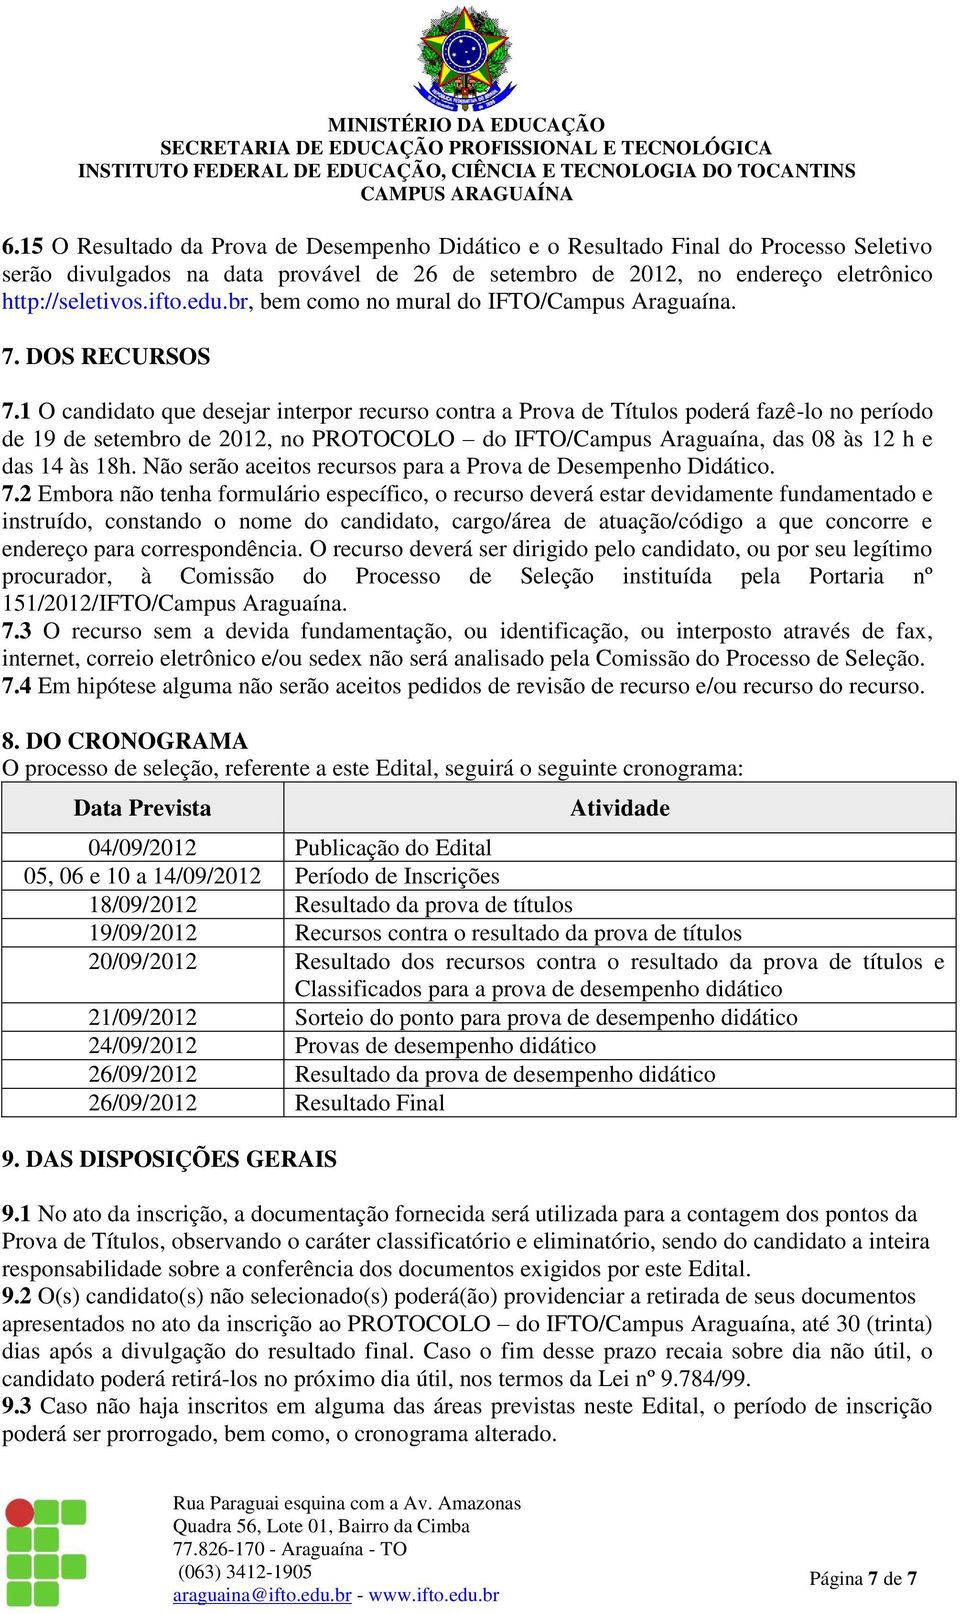 1 O candidato que desejar interpor recurso contra a Prova de Títulos poderá fazê-lo no período de 19 de setembro de 2012, no PROTOCOLO do IFTO/Campus Araguaína, das 08 às 12 h e das 14 às 18h.